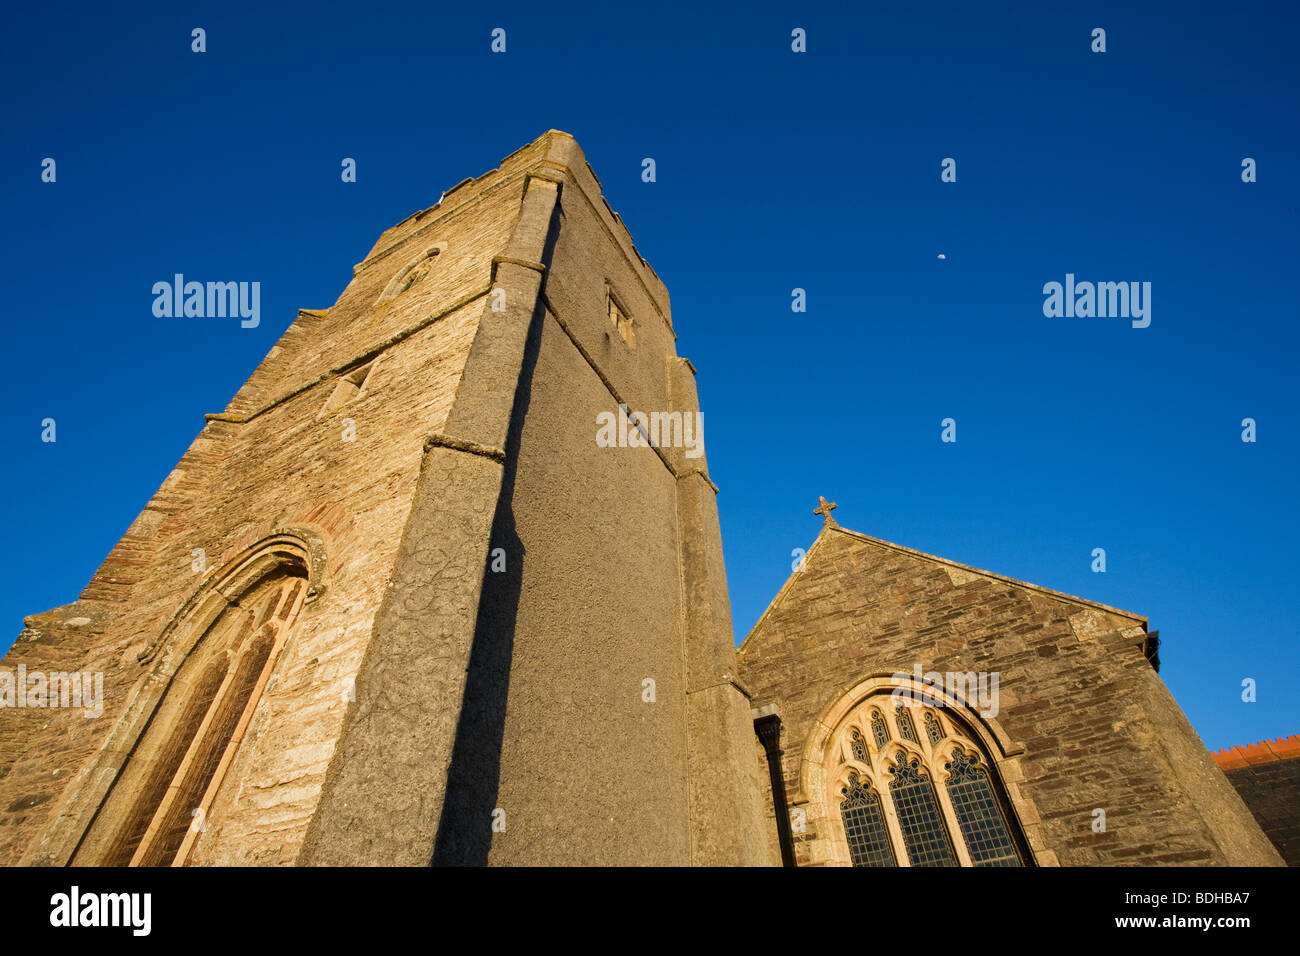 St Werburgh's Church, Wembury, Devon, England, UK Banque D'Images